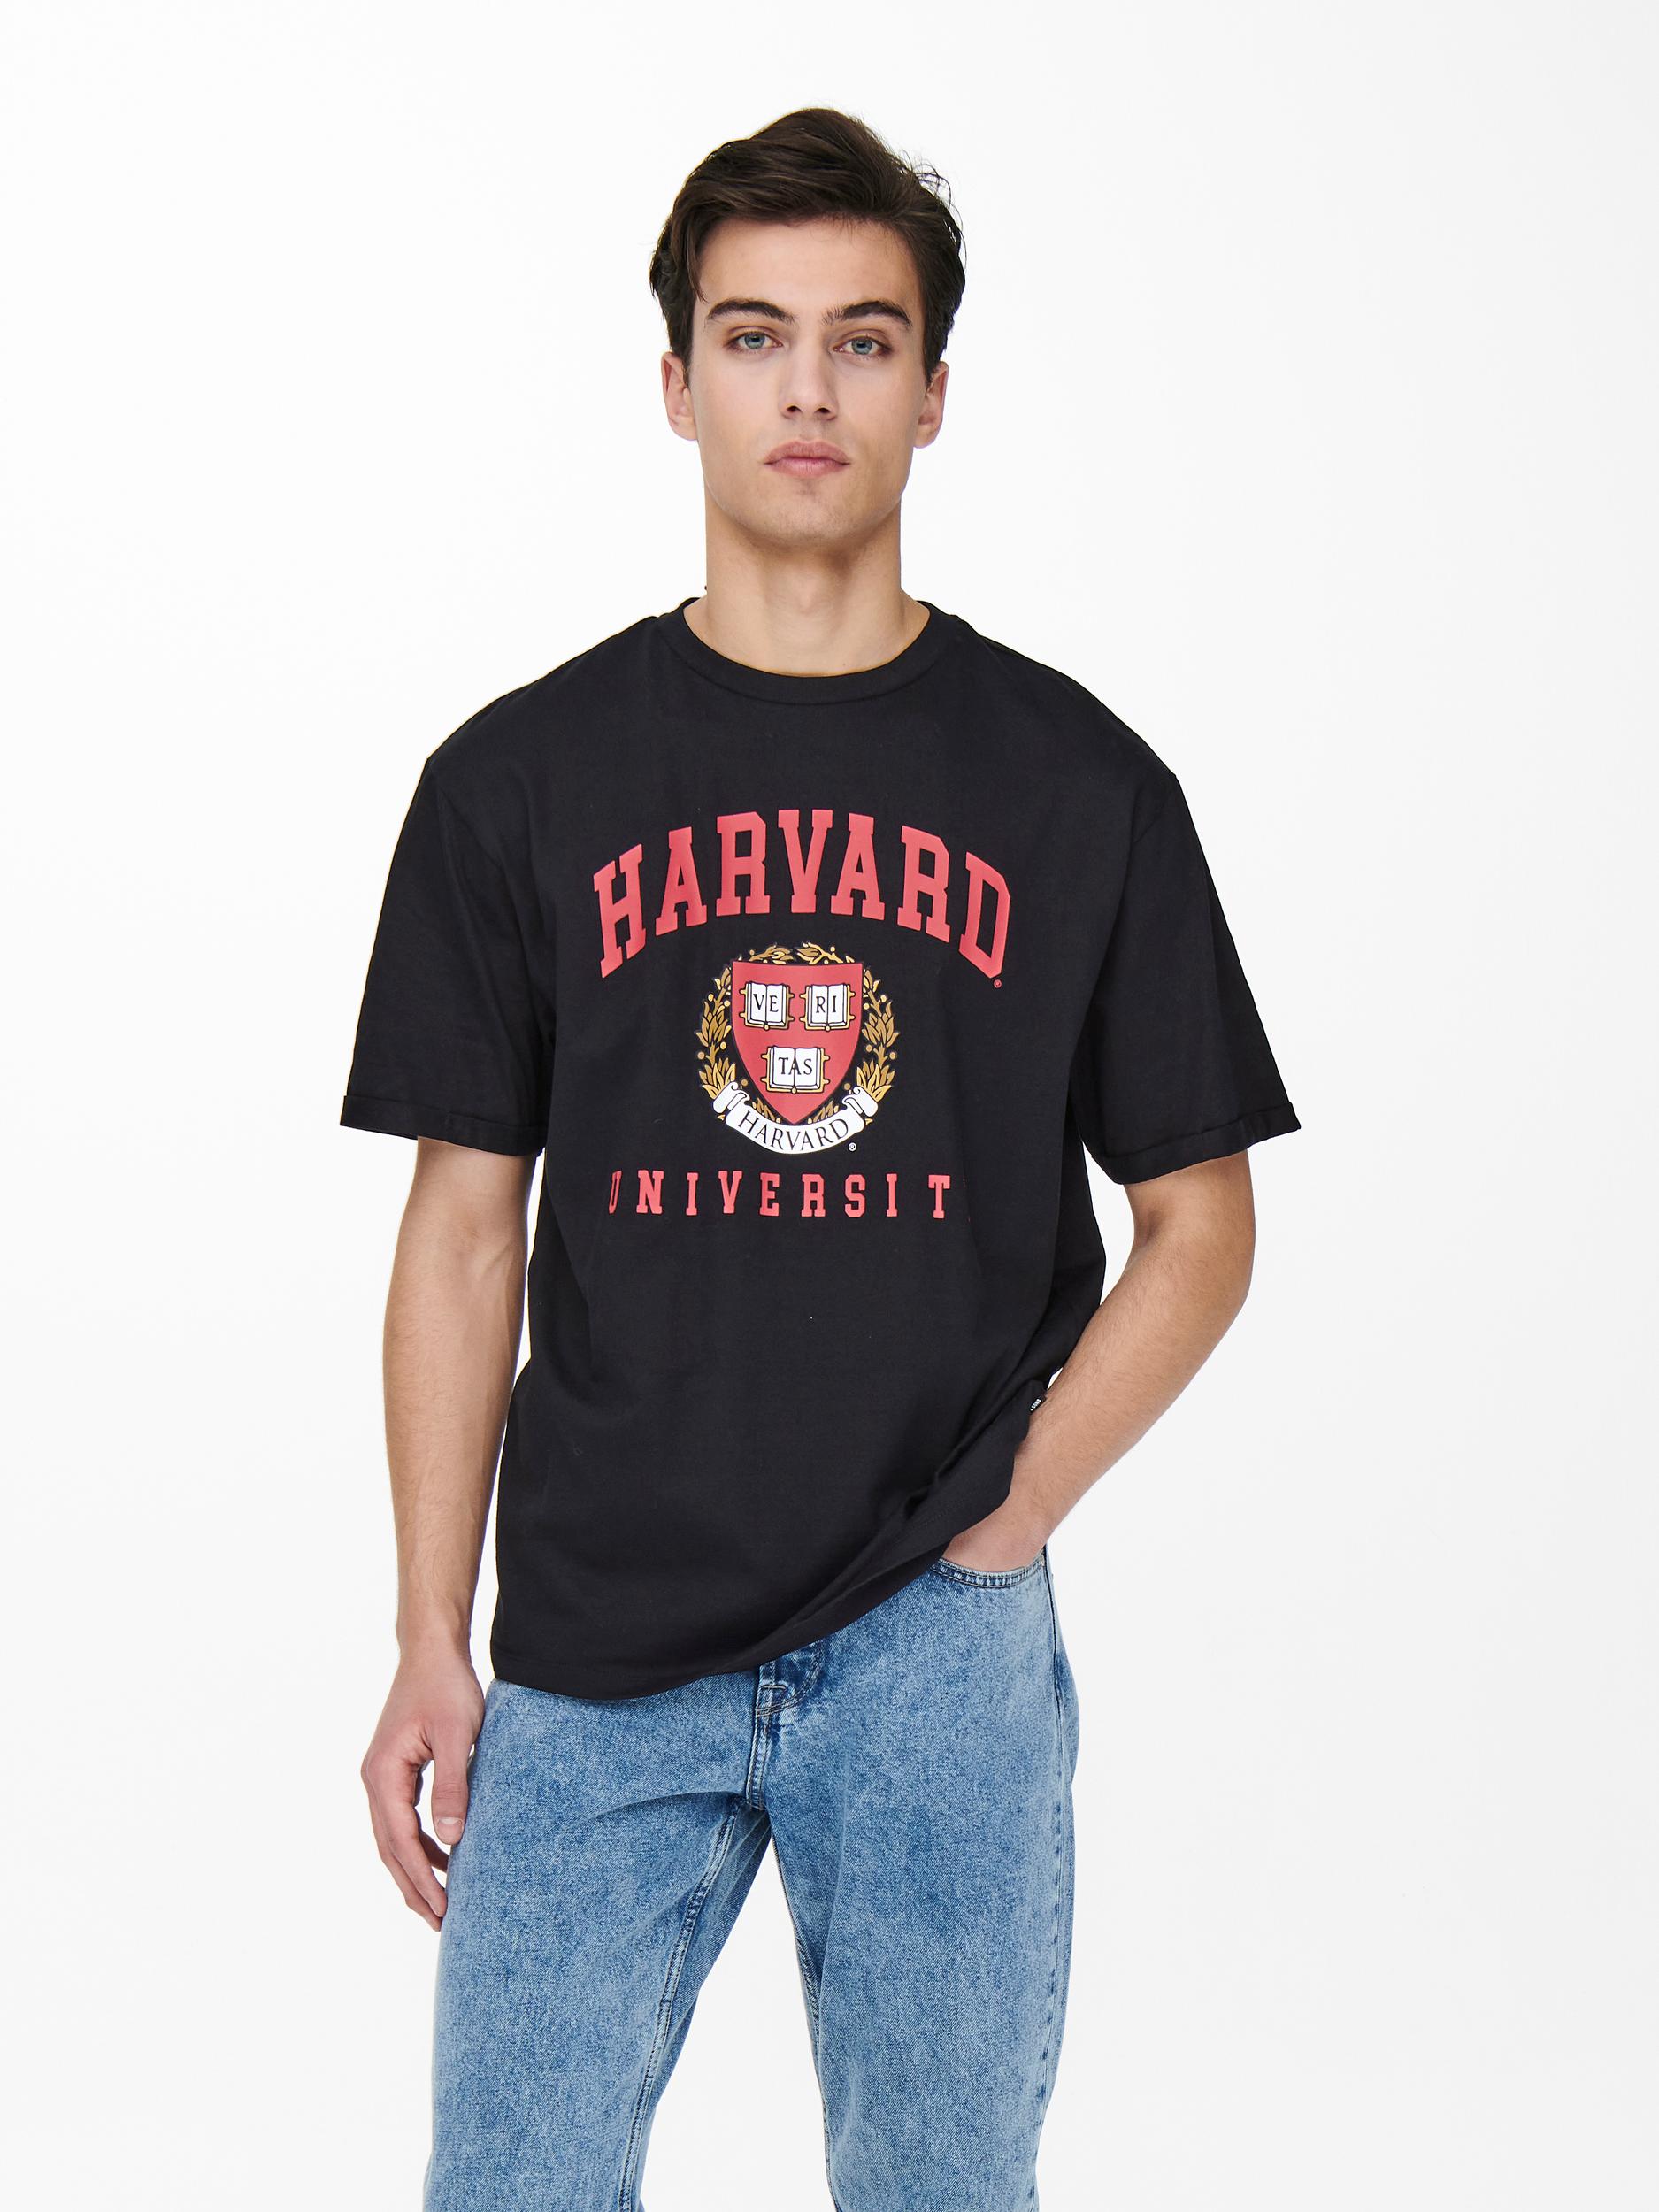 ONLY Harvard T-shirt, Sort, XL